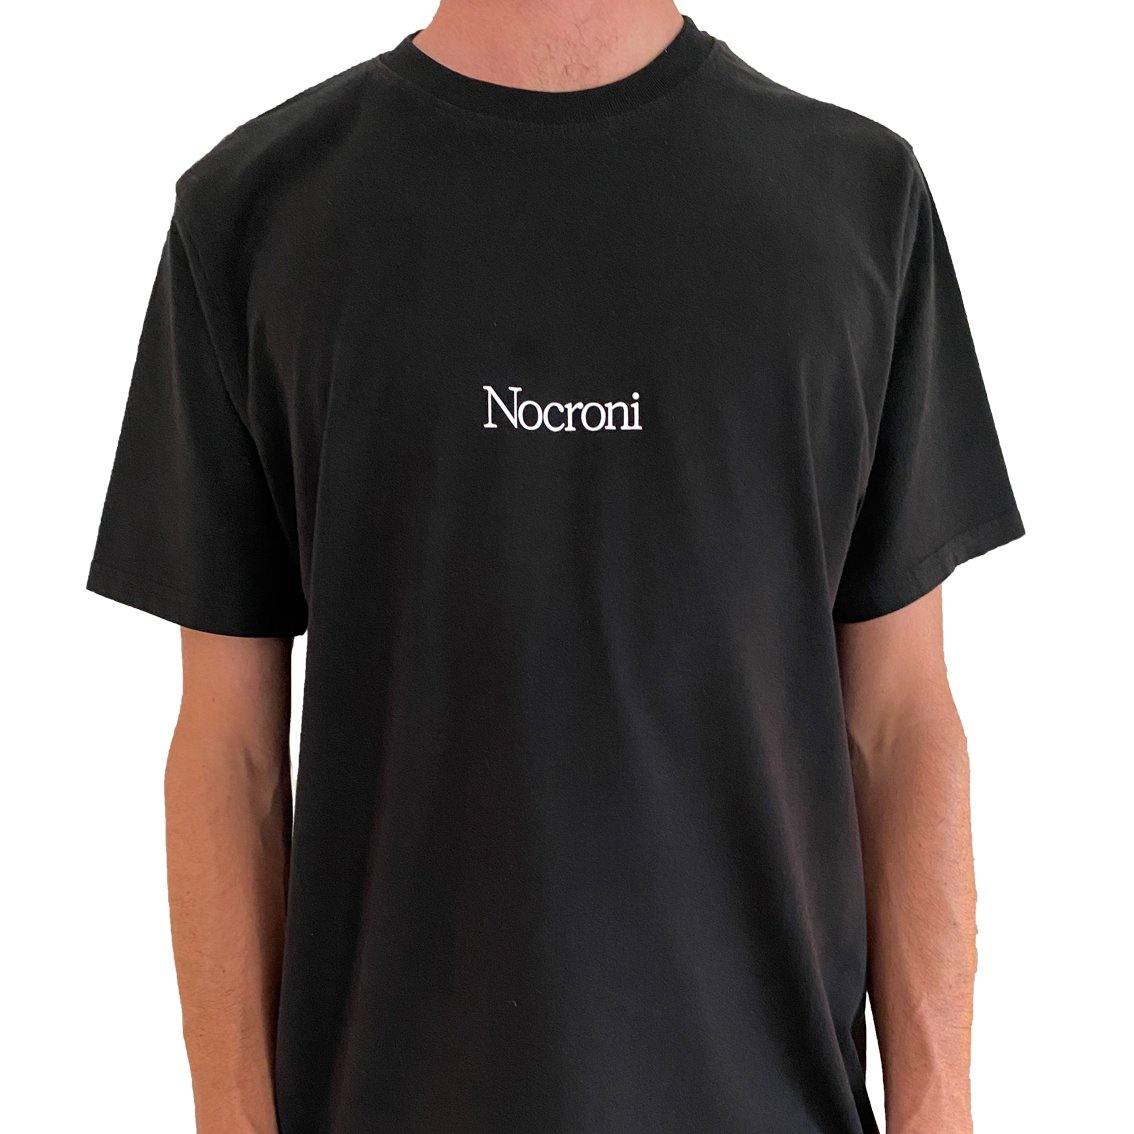 Nocroni Original Black/White UNISEX - Nocroni